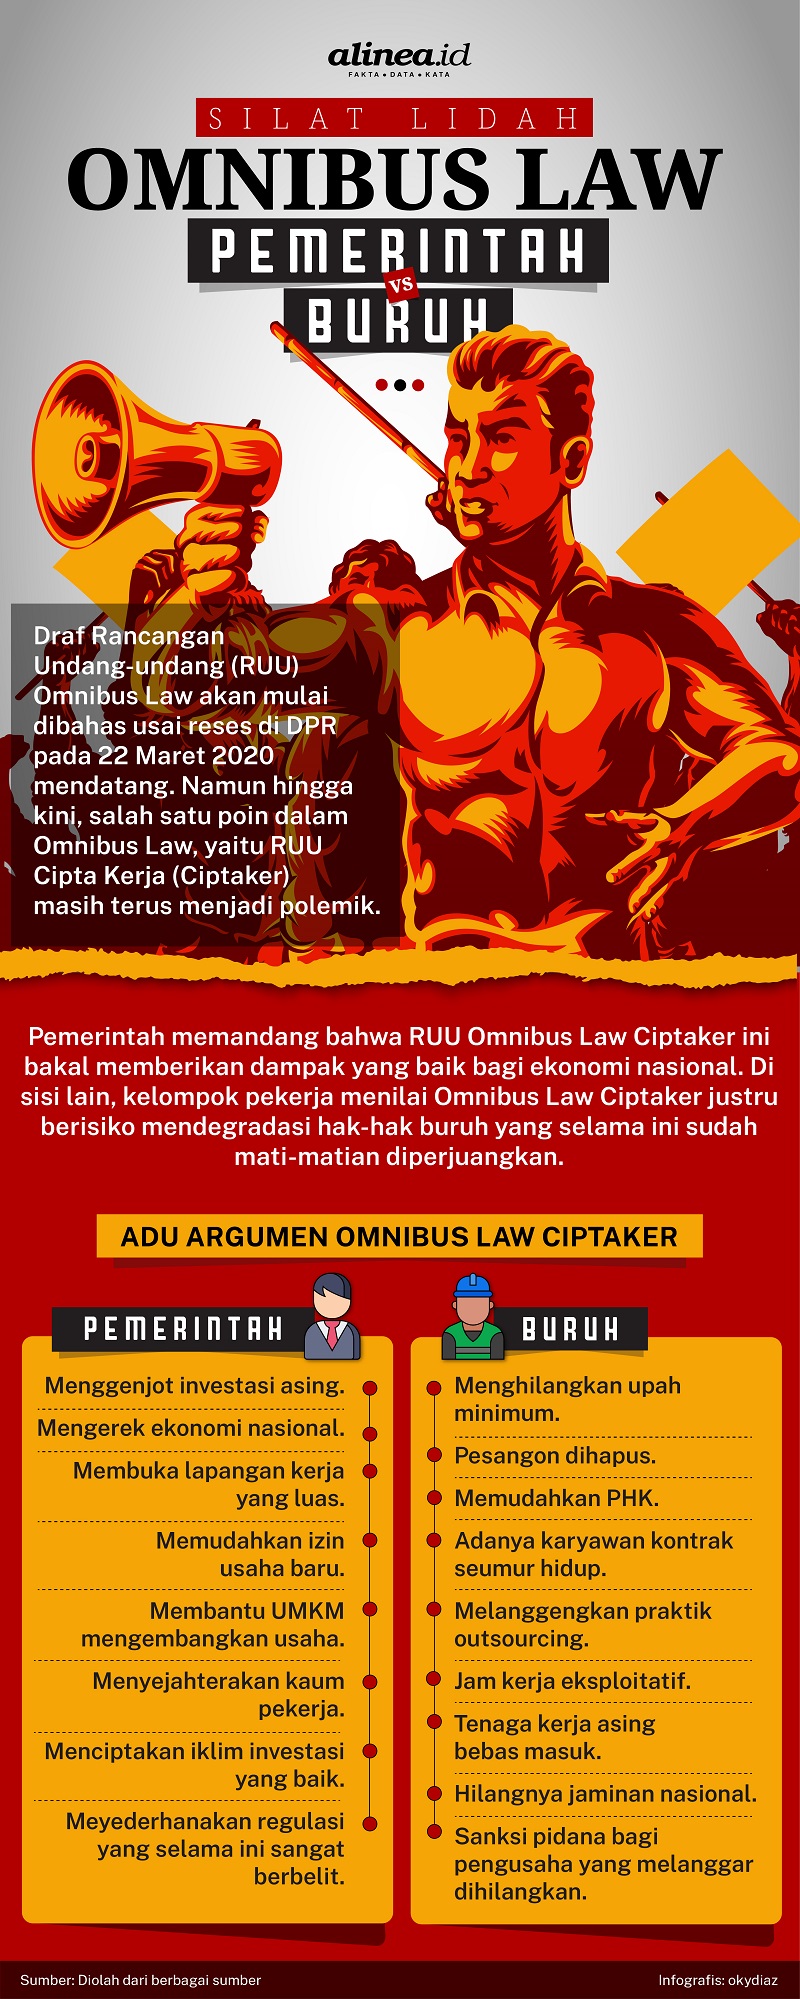 Infografik adu argumen Omnibus Law Cipta Kerja antara pemerintah dengan buruh. Alinea.id/Oky Diaz Fajar